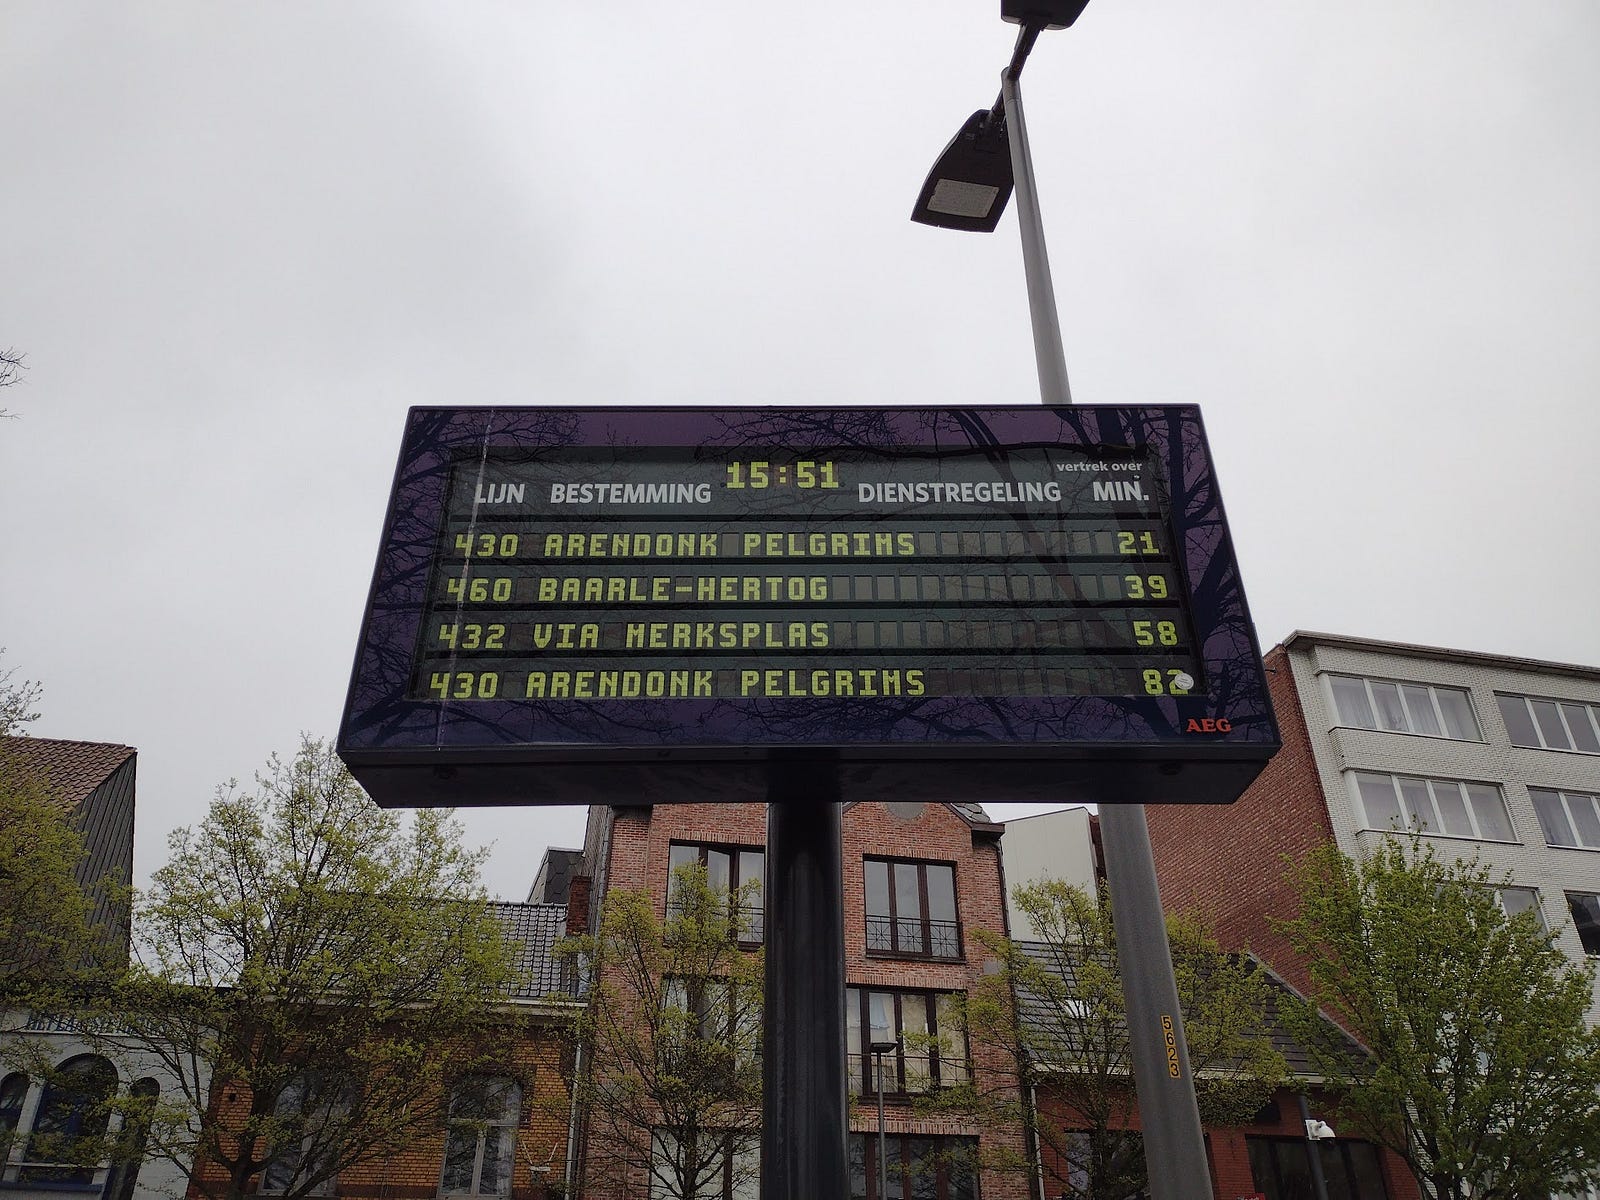 Sign showing times until buses arrive, including Baarle-Hertog